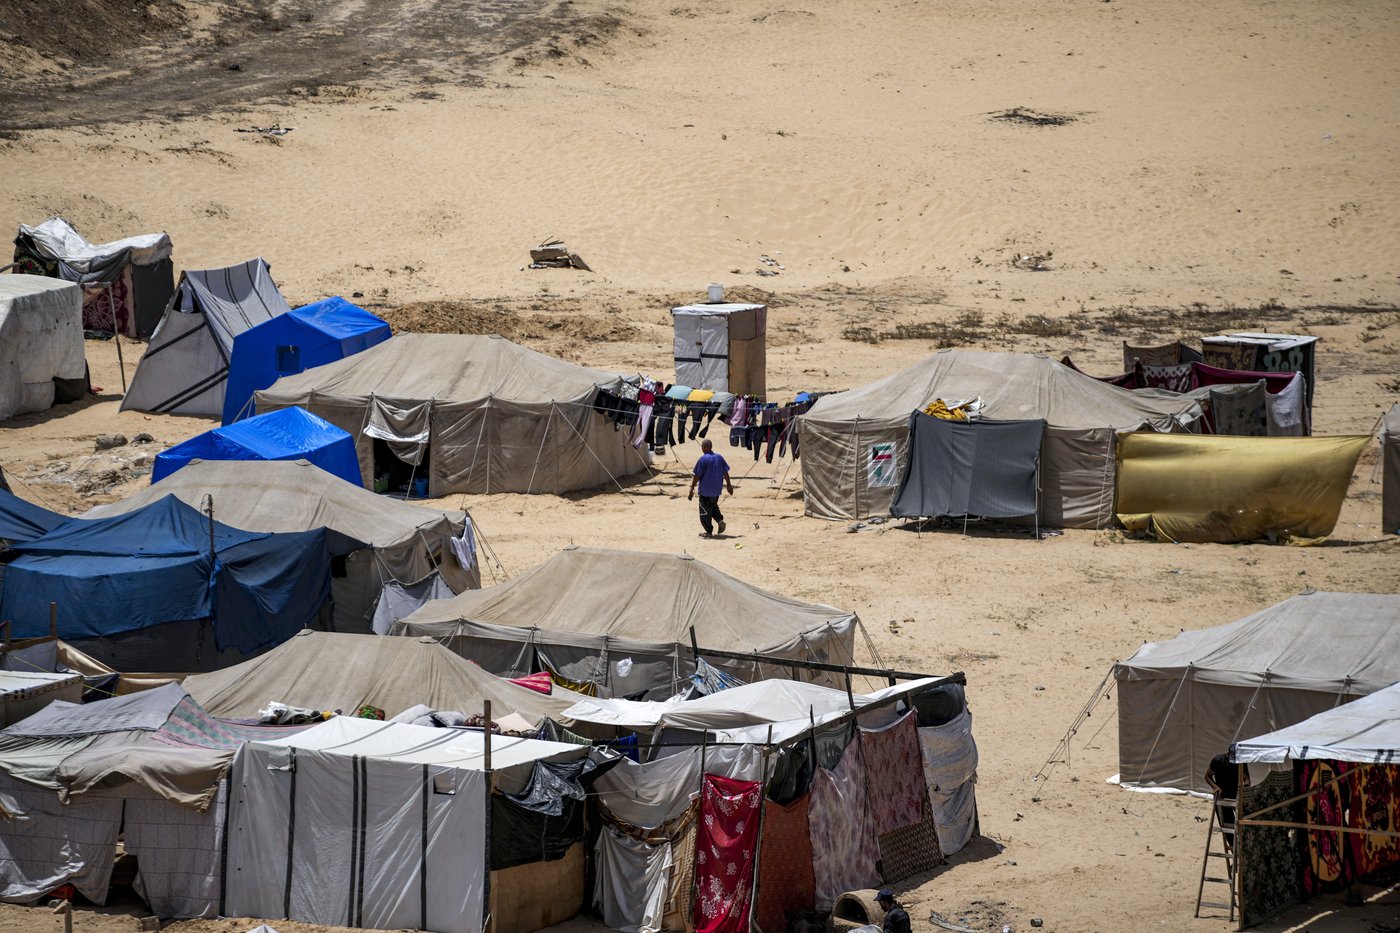 Israël ordonne l’évacuation d’une partie d’une zone humanitaire à Gaza